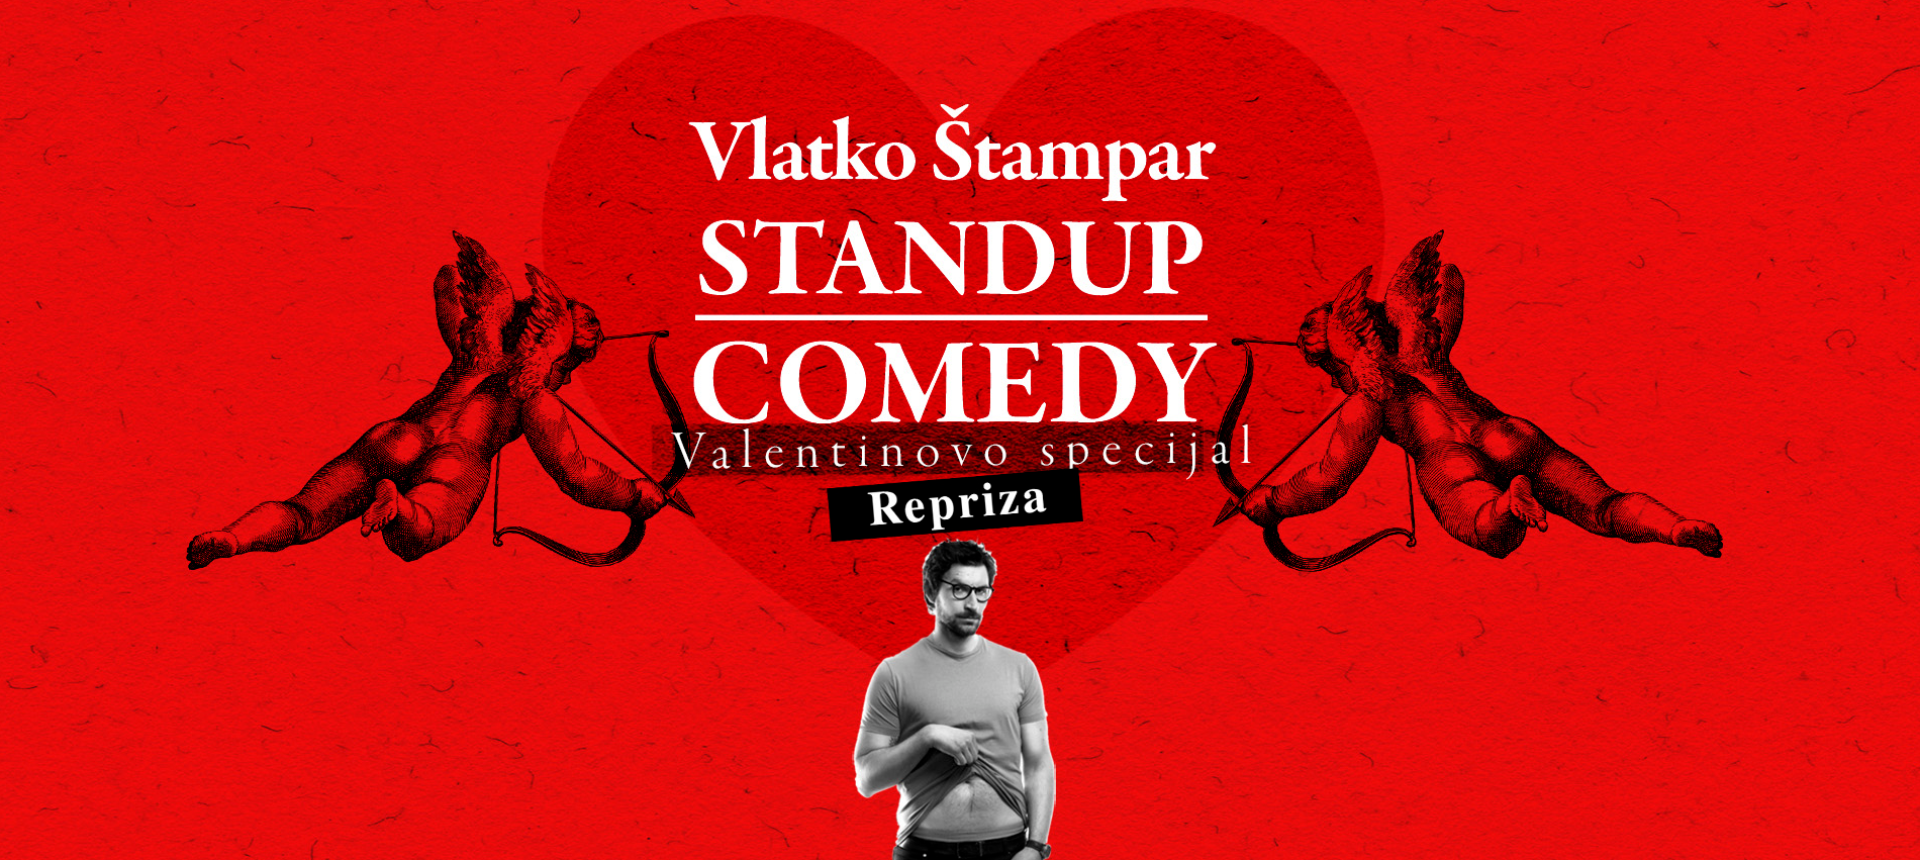  VLATKO ŠTAMPAR - STAND UP COMEDY - Valentinovo specijal - by Lajnap